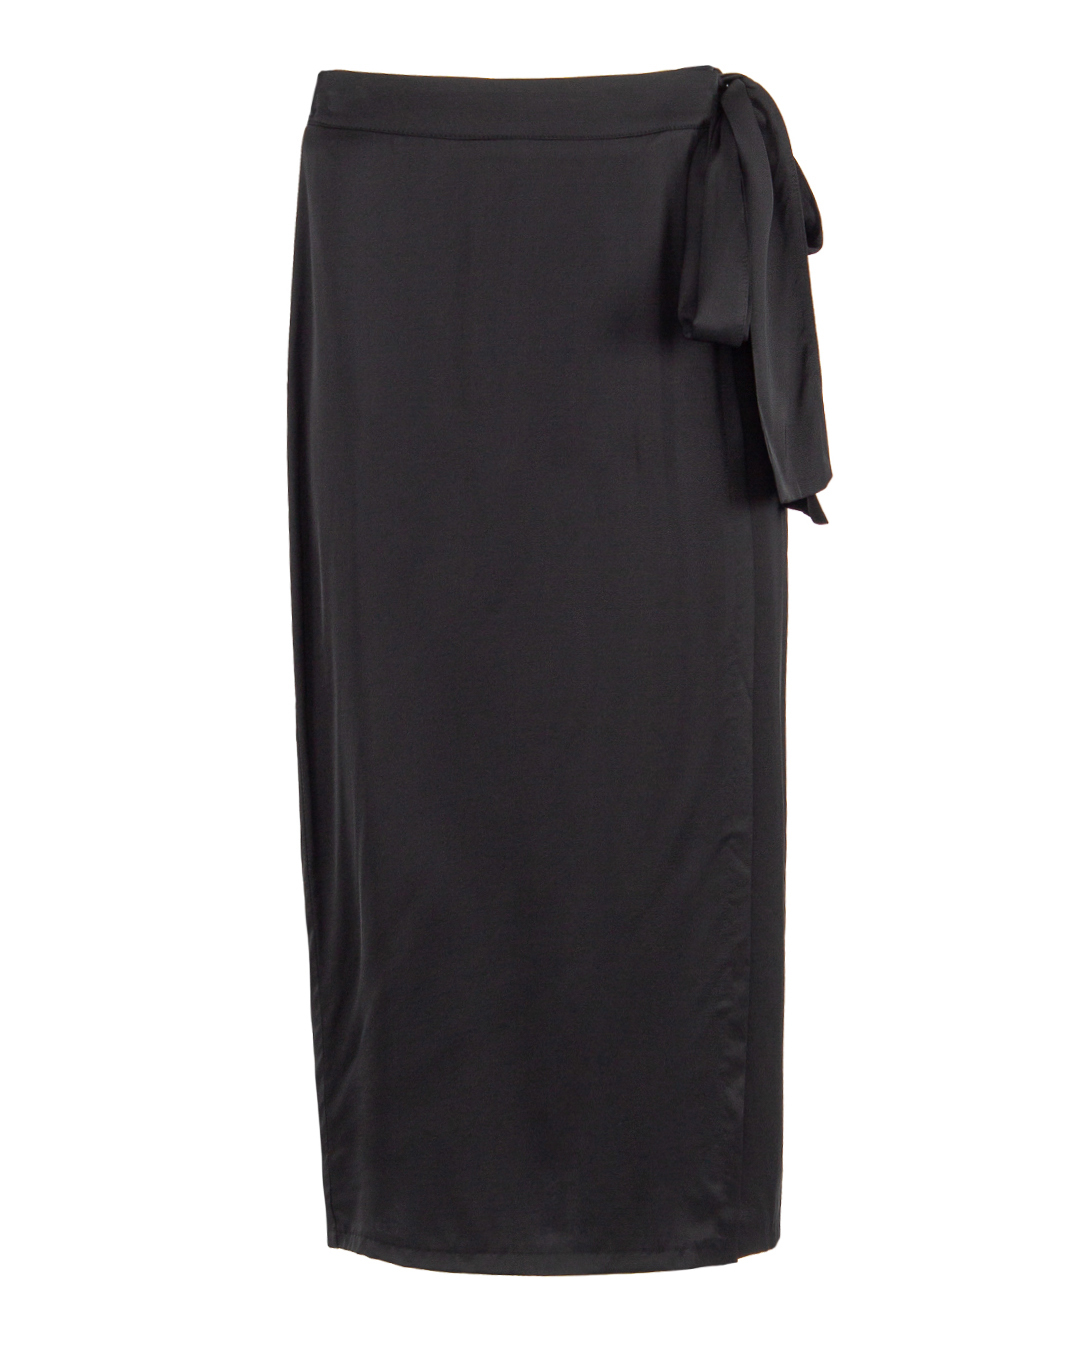 юбка ICONA BY KAOS PP5TZ007 черный 42, размер 42 - фото 1